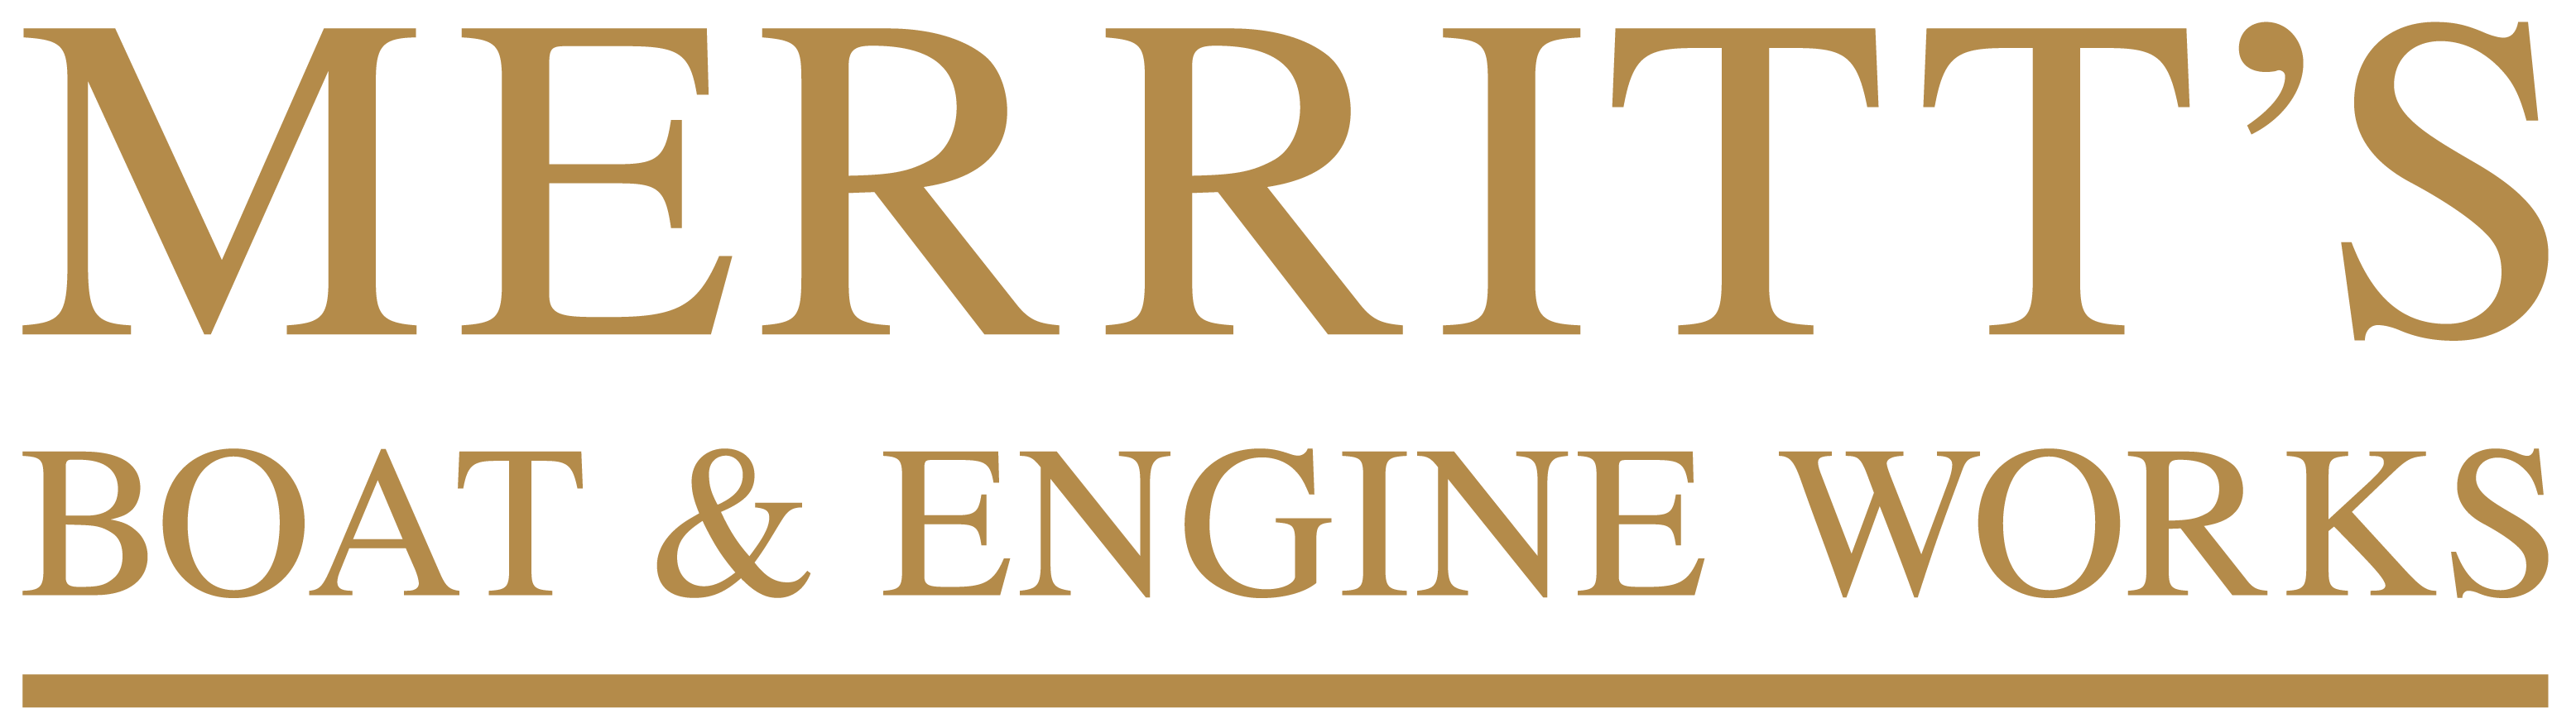 Merritts Logo 2021